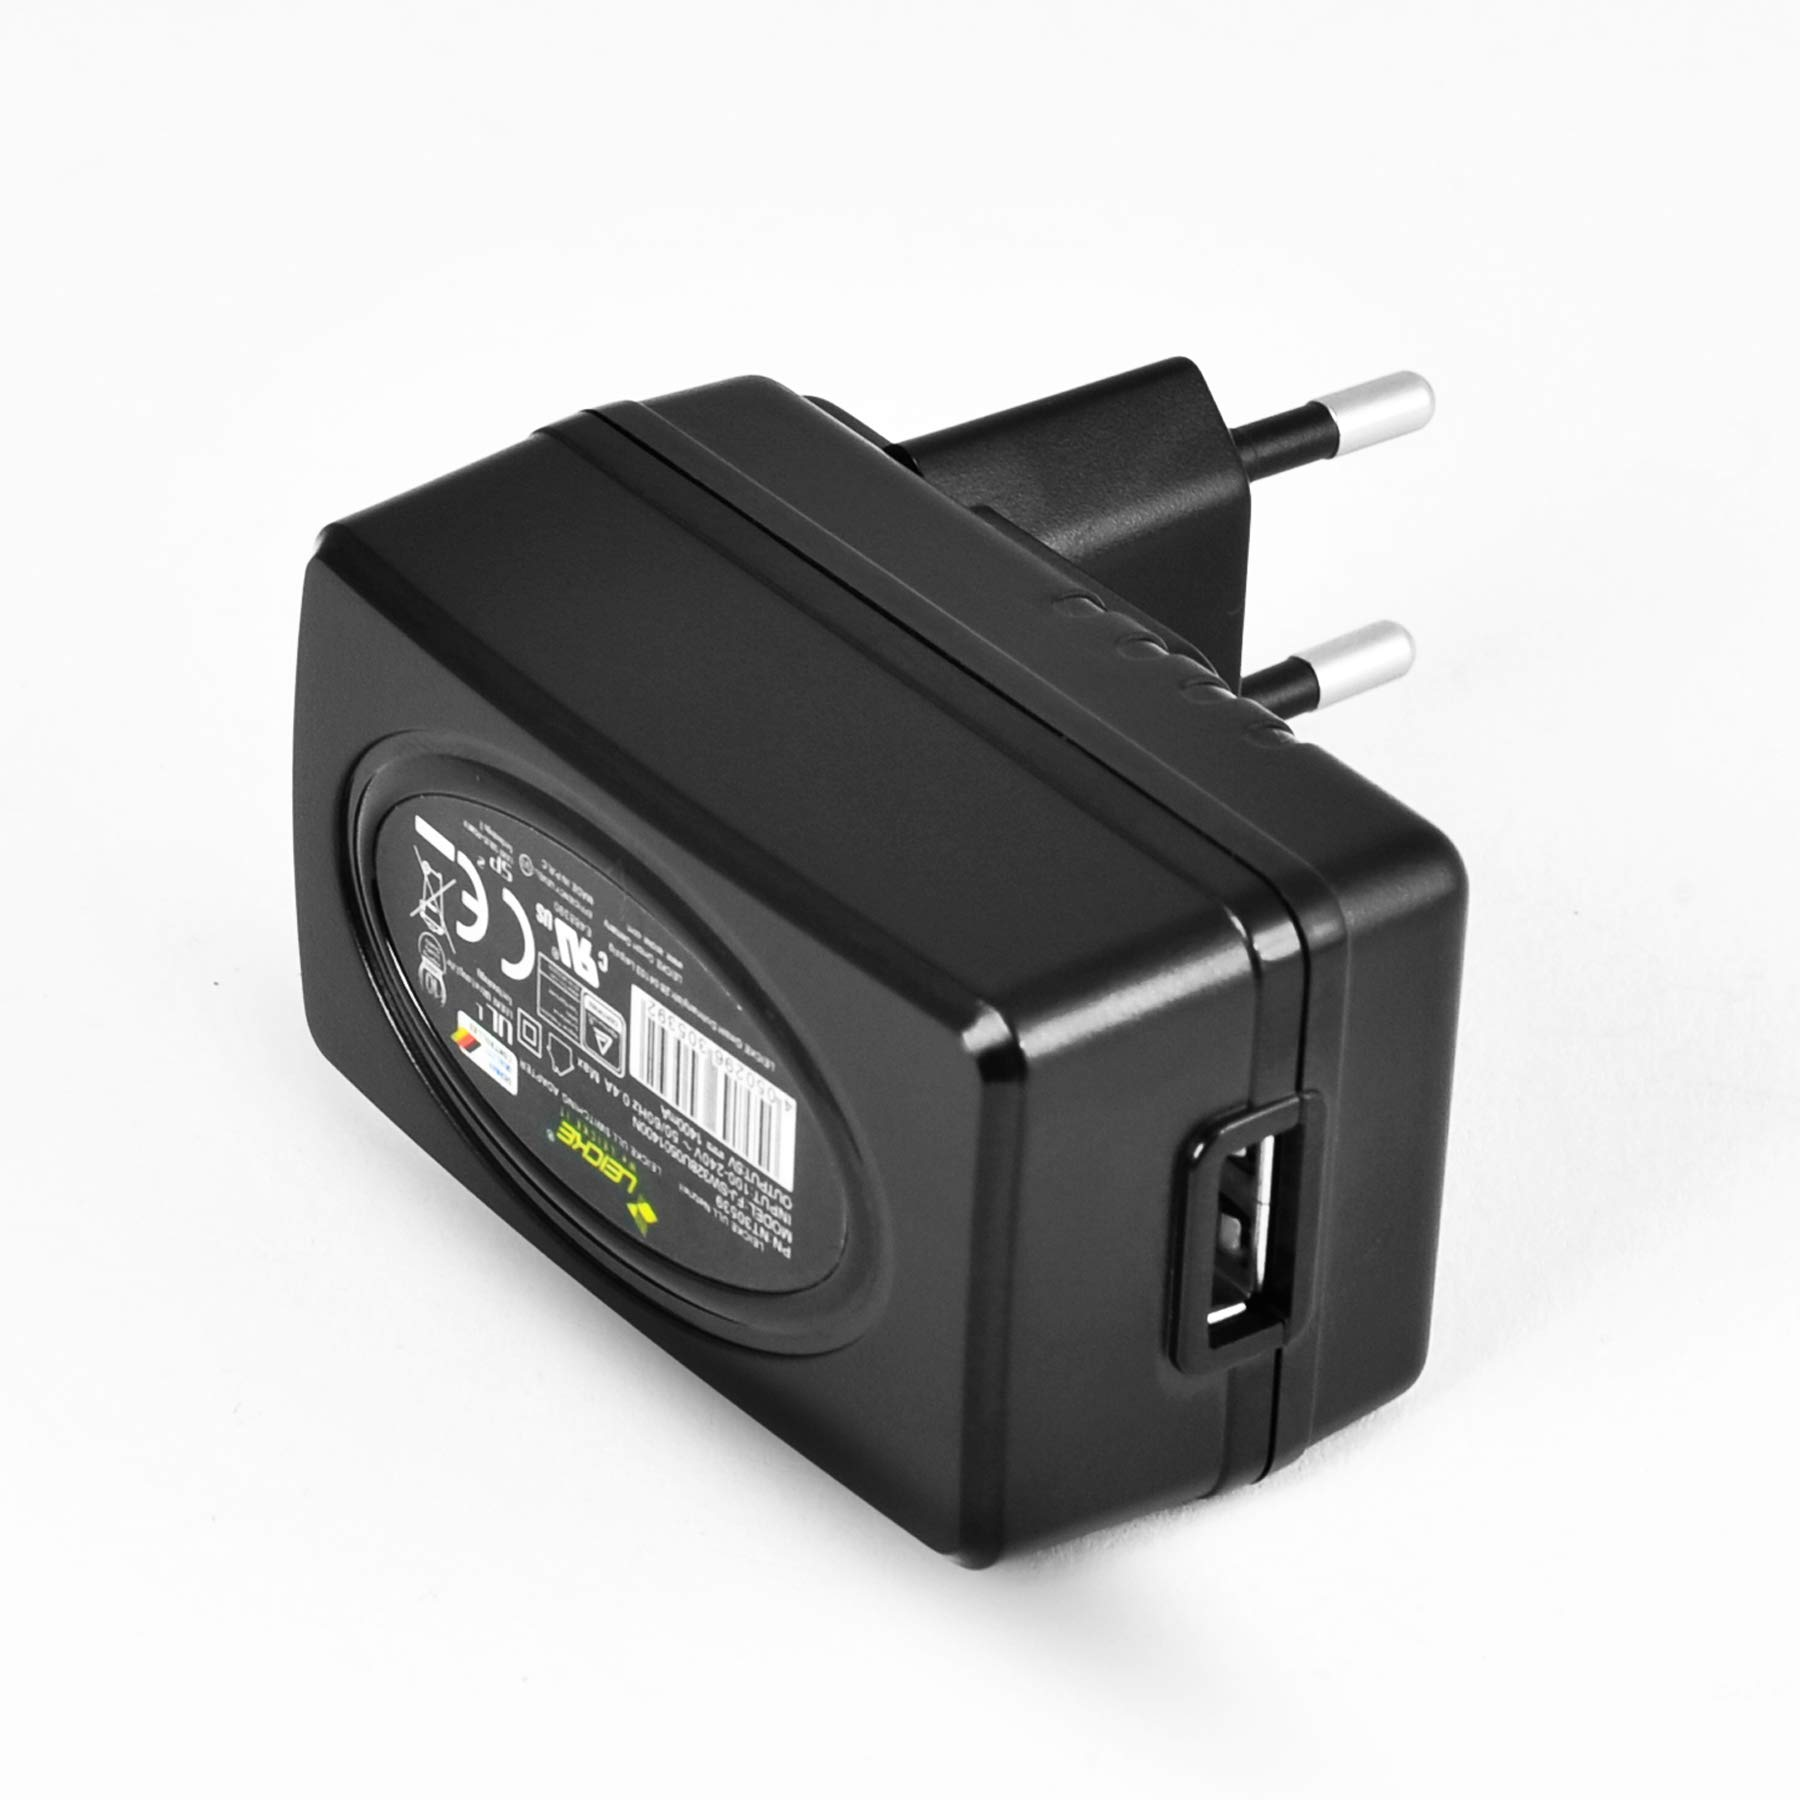 LEICKE 5 V 1,4 A Ersatz-Netzteil für Diagnose, FOX6-XM-USB Netzteil Überwachung und Behandlung Friwo